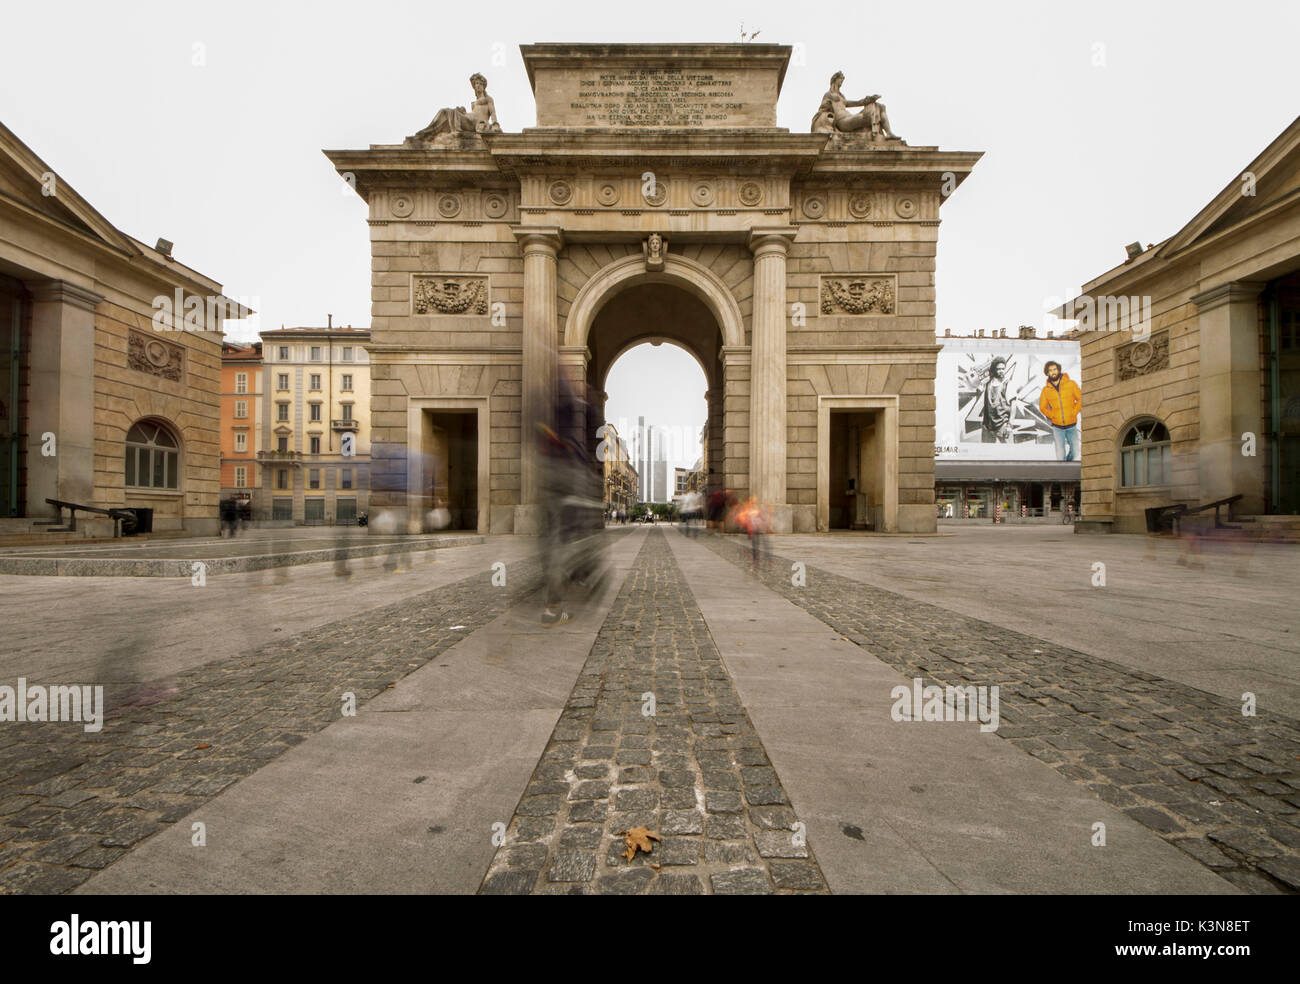 La porte de Garibaldi, ancienne entrée de la ville de Milan se trouve dans le centre de Milan, place avril XXV. Lombardie, Italie Banque D'Images